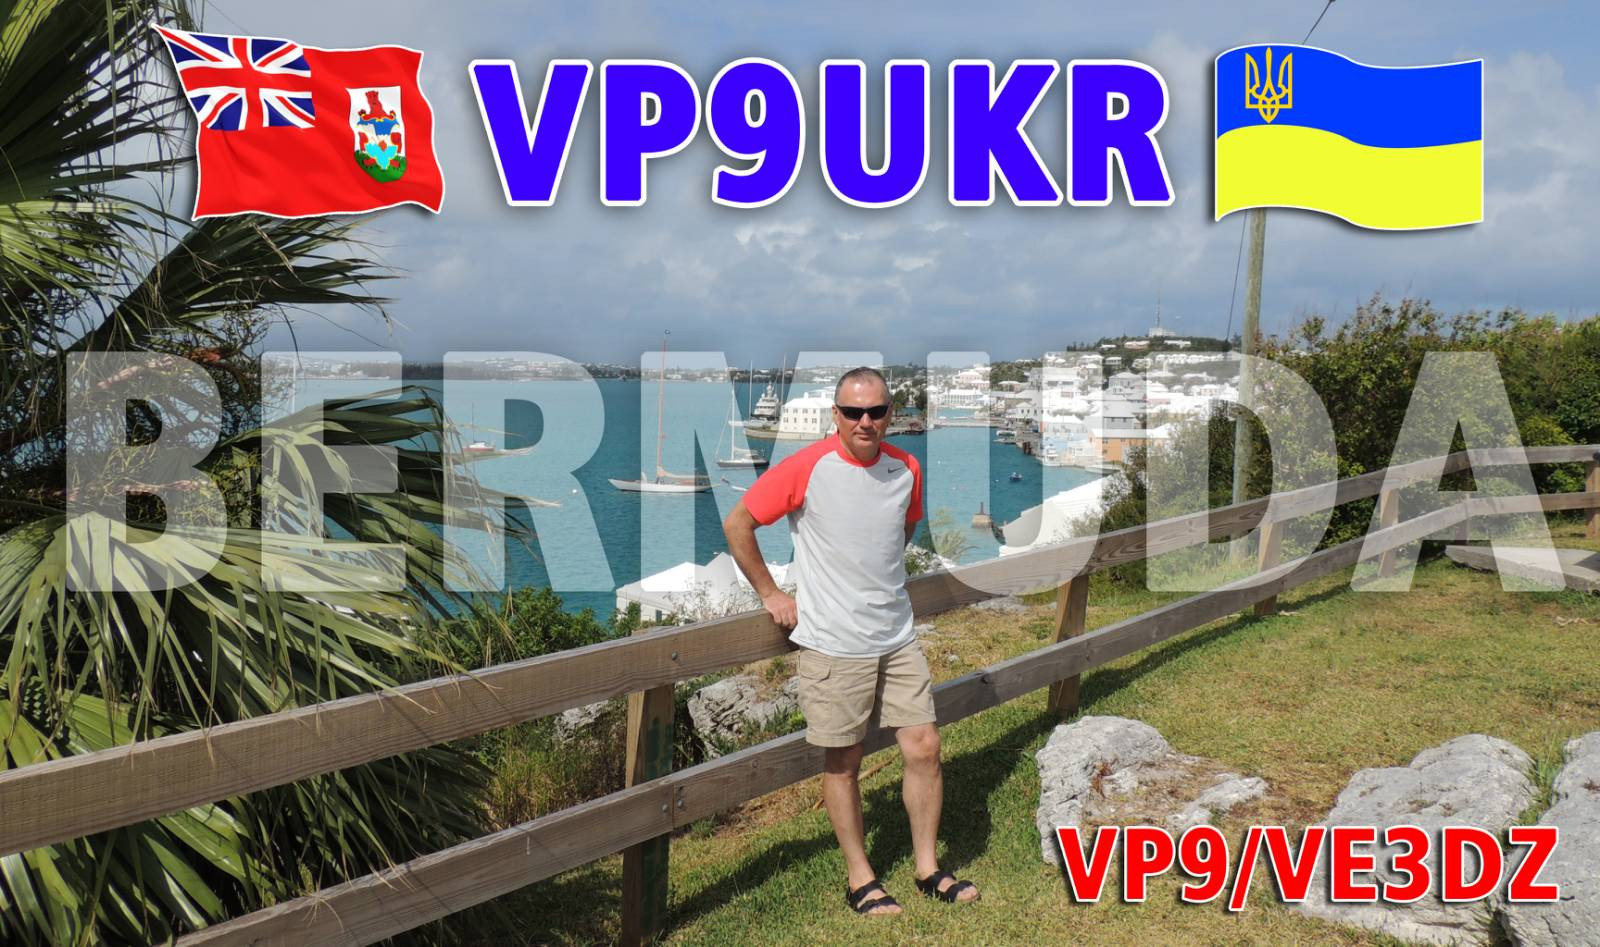 VP9UKR VP9/VE3DZ Bermuda Islands QSL Card